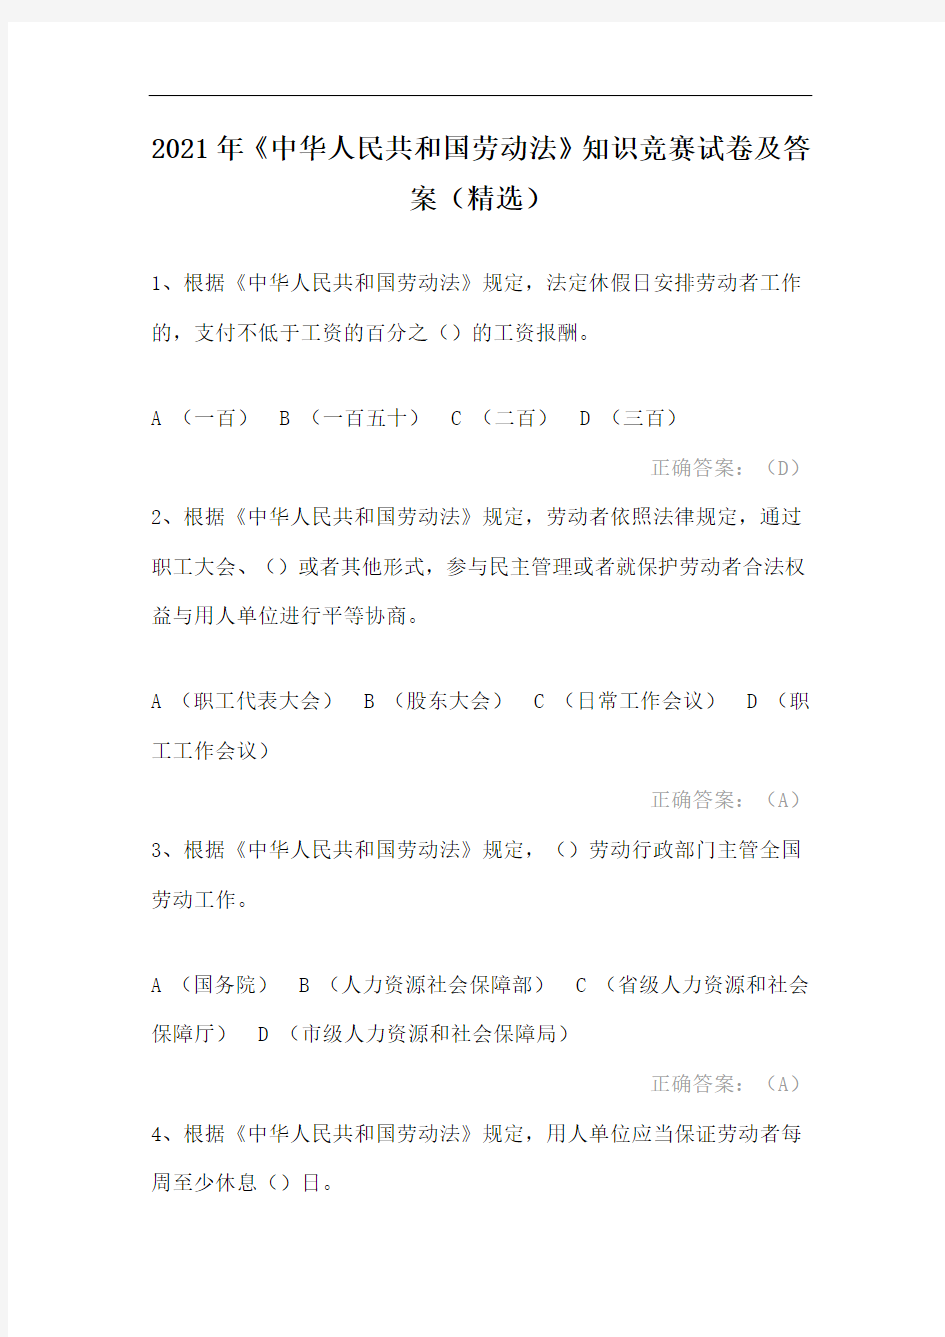 2021年《中华人民共和国劳动法》知识竞赛试卷及答案(精选)